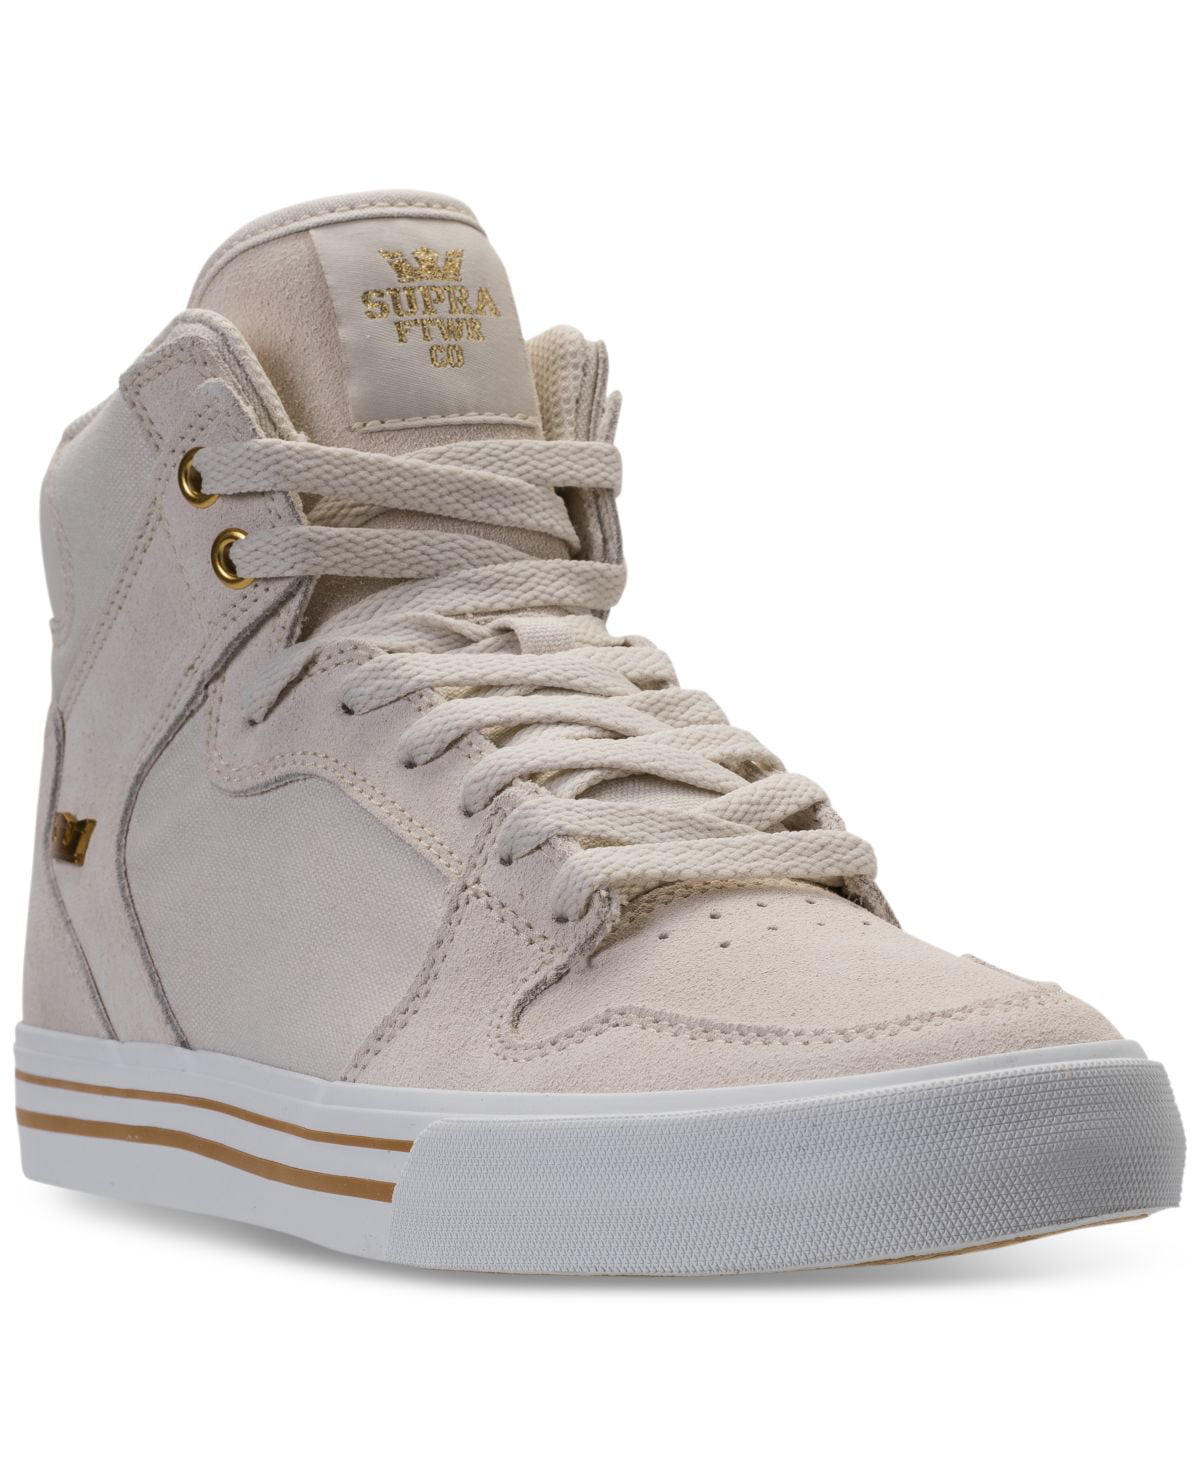 Supra 08203-114 : Vaider LC Sneaker (Off White White, 9.5 D(M) US - Walmart.com